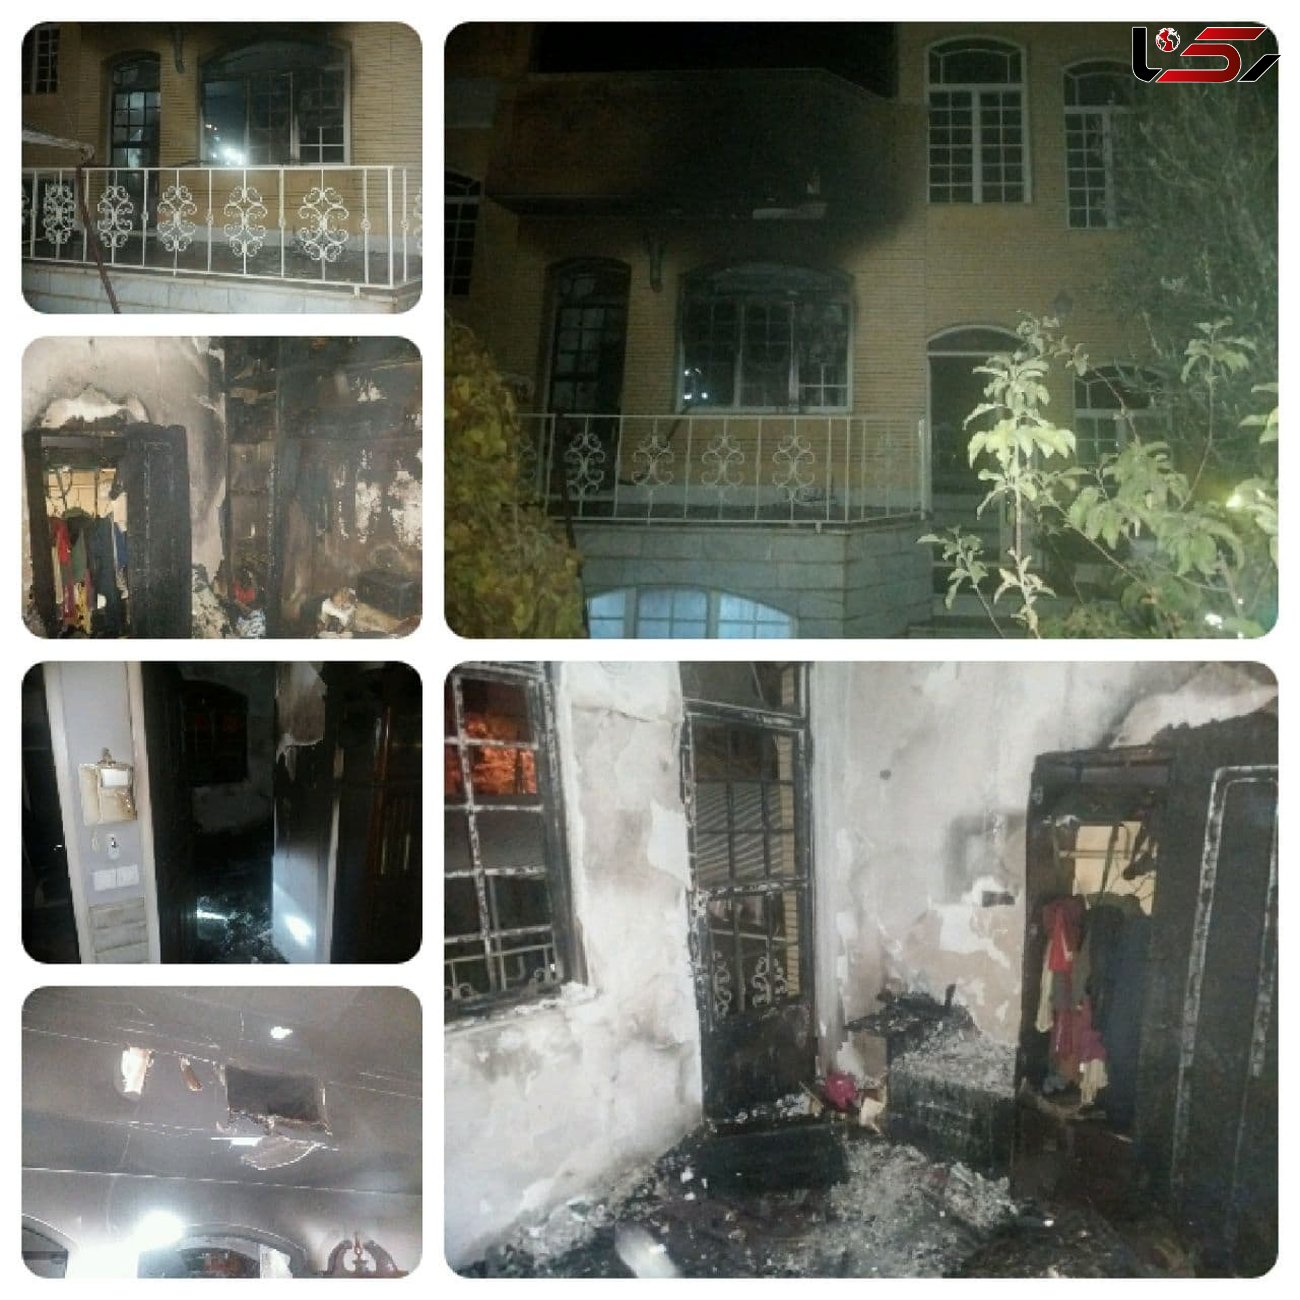 یک واحد مسکونی در سمنان طعمه حرق شد 